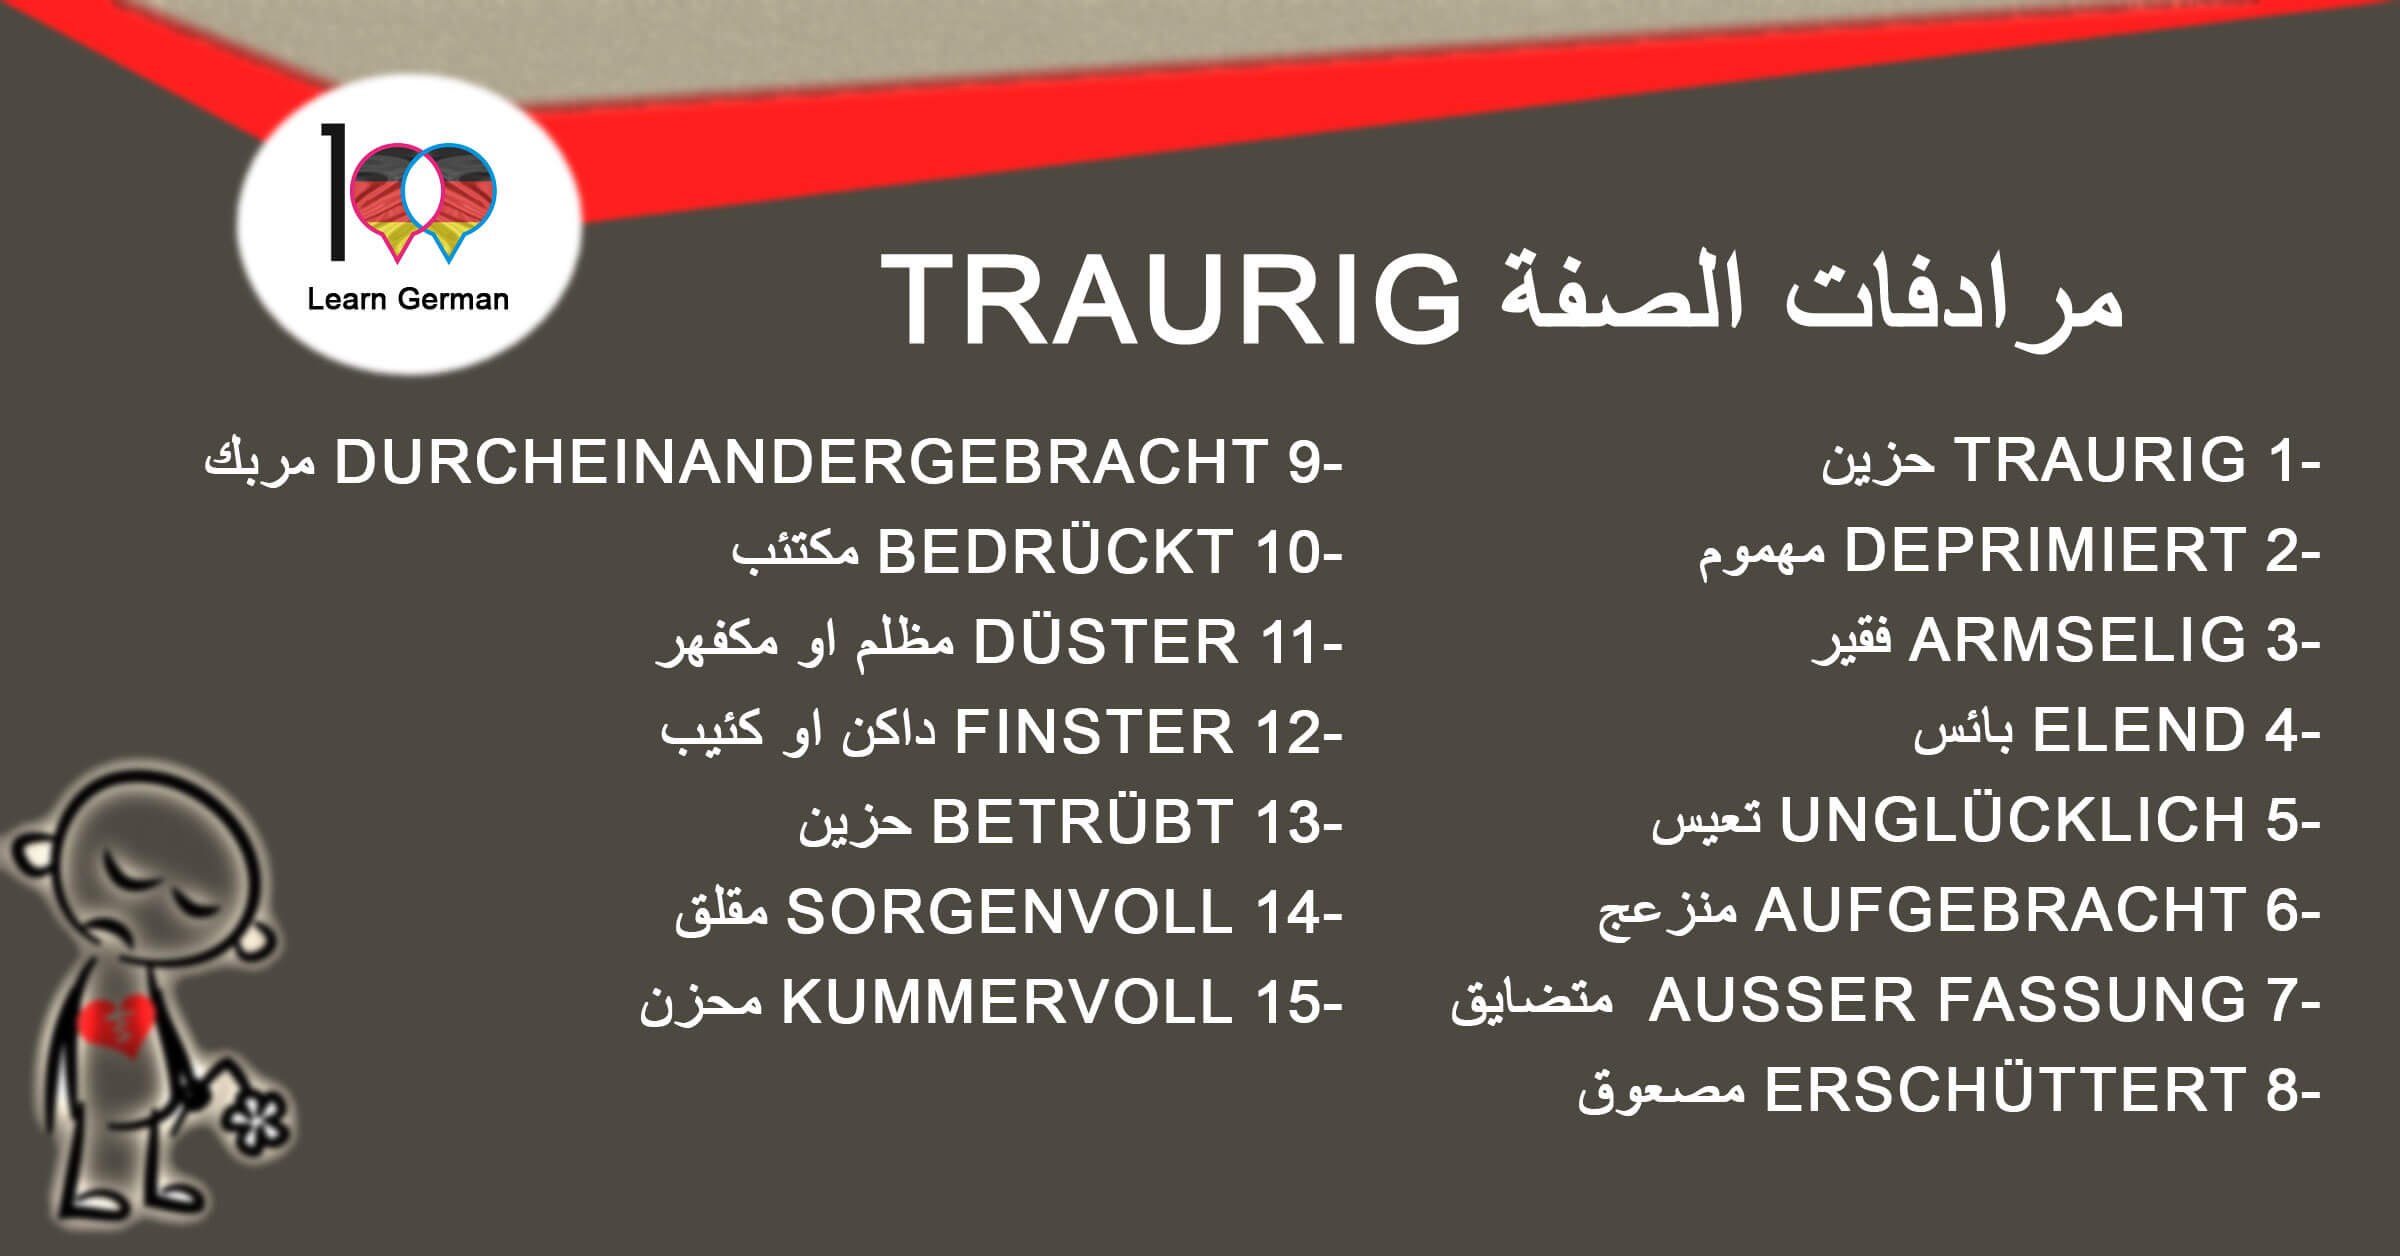 مرادفات الصفة Traurig - تعلم اللغة الالمانية traurig 1 تعلم اللغة الالمانية